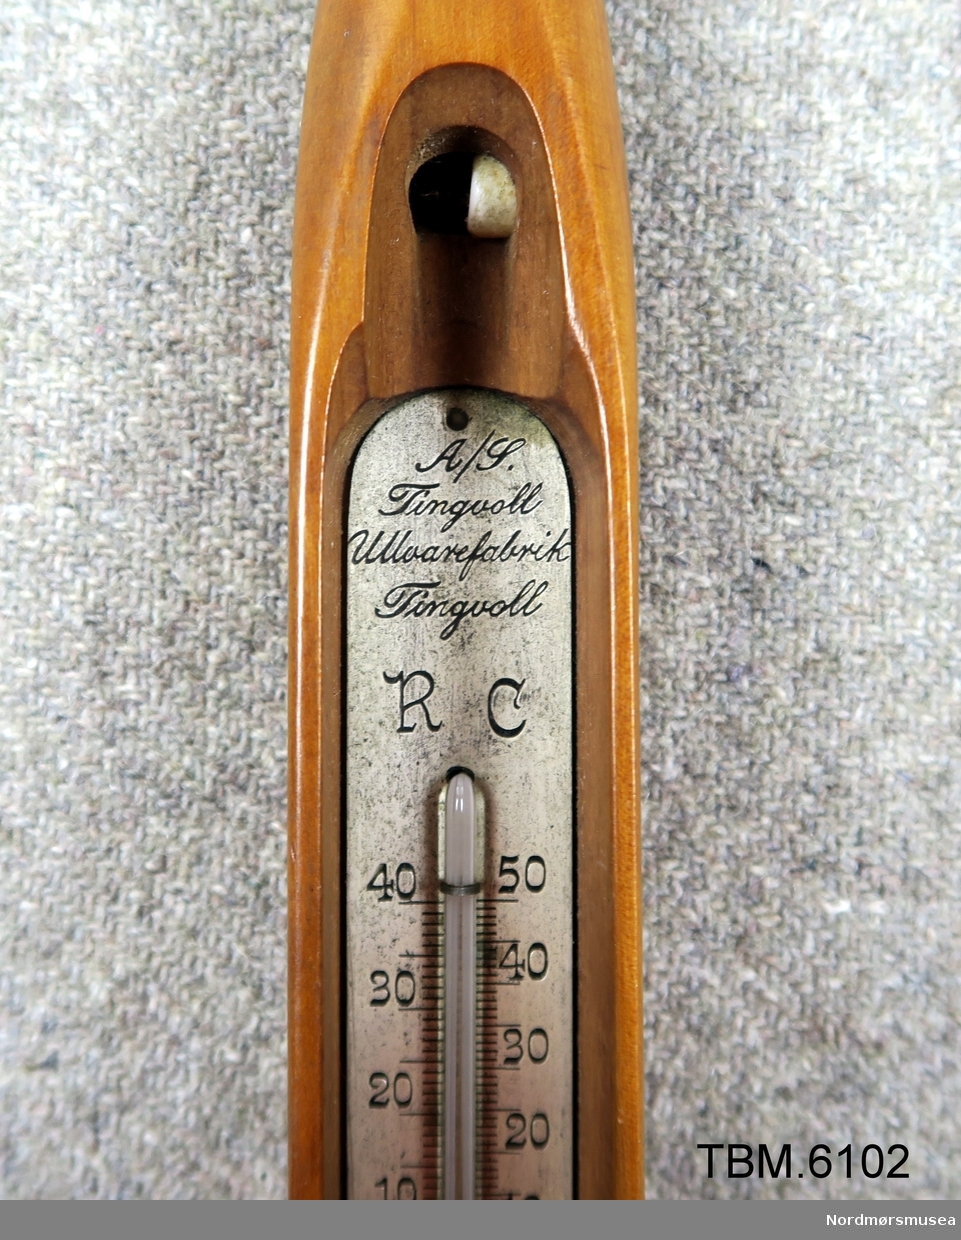 Fin polert vevskei med eit termometer i rommet der spolen skal vere.
Reklame for Tingvoll Ullvarefabrikk